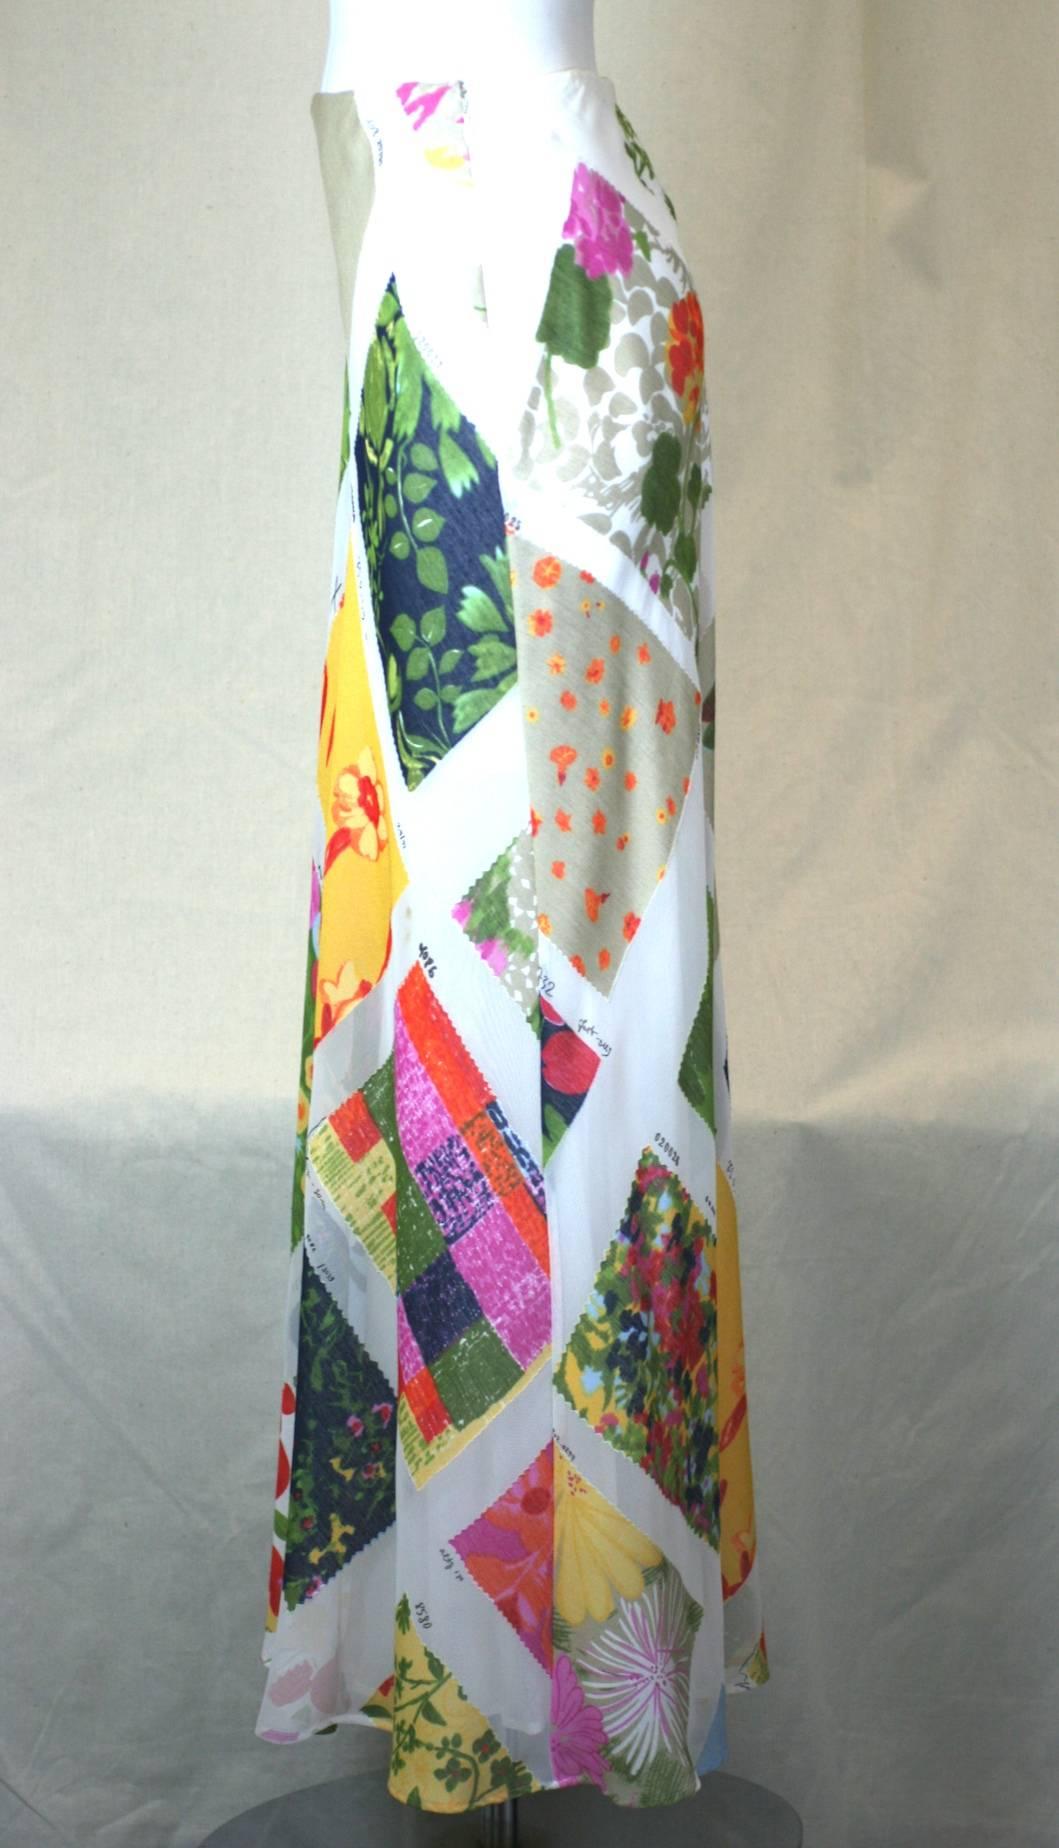 Moschino Cheap and Chic Printed Chiffon Fabric Swatch Skirt aus verschiedenfarbigen Stoffmustern auf weißem Grund. Fließender Bias-Schnitt mit seidig-weißem Futter. Seitlicher Reißverschluss. Polyester/Viskose. Ausgezeichneter Condit, 2000er